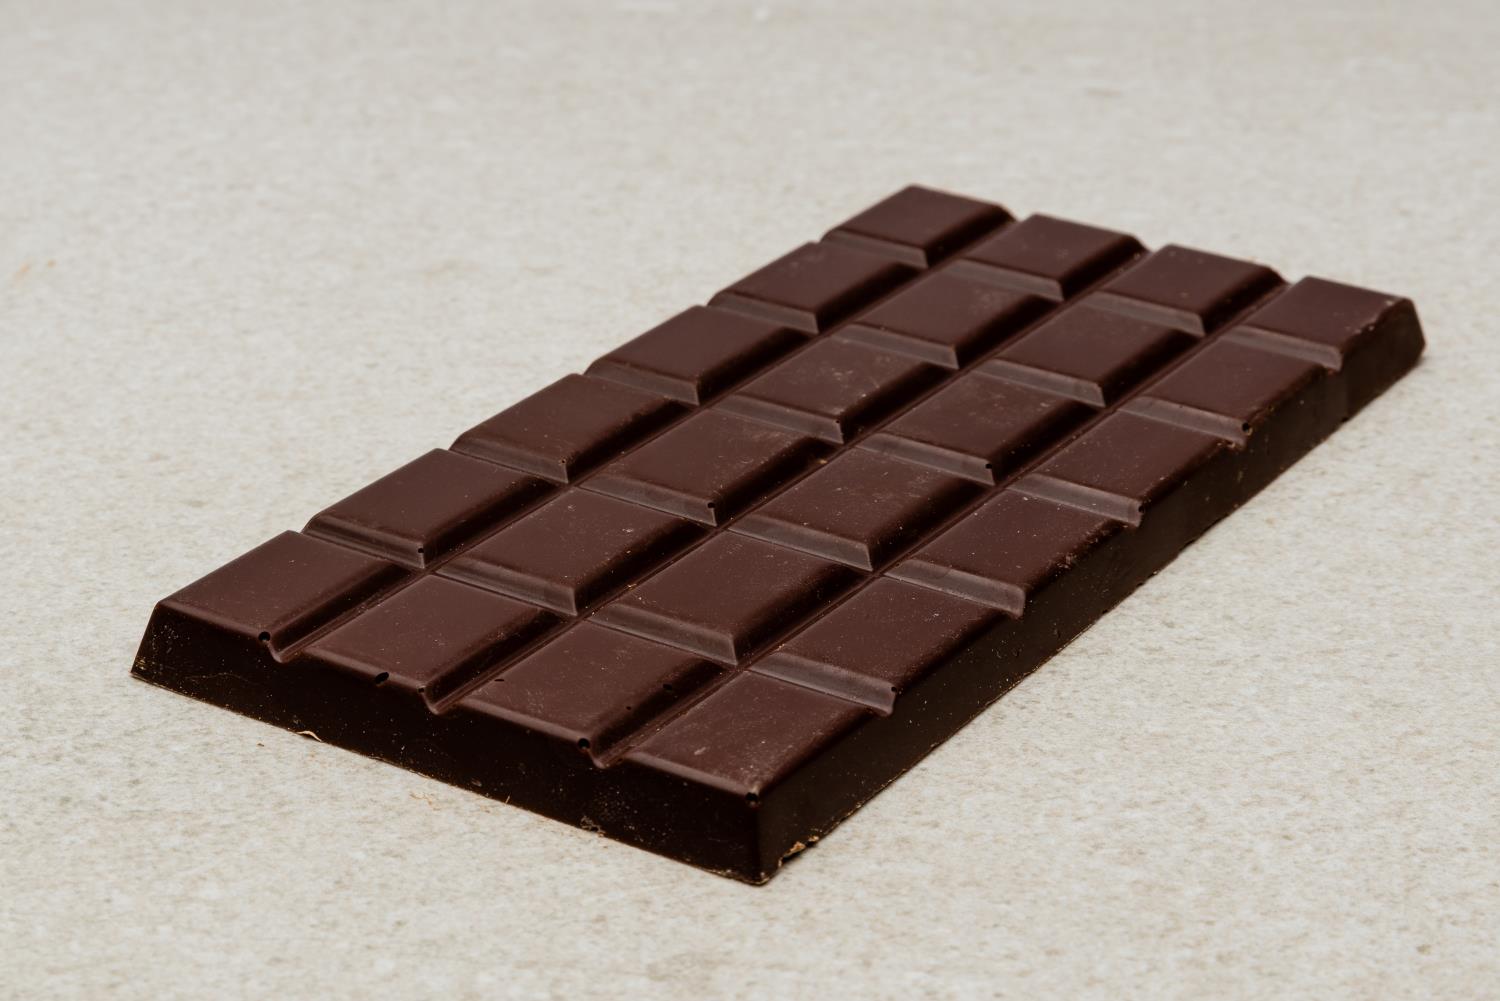 Plate mørk sjokolade